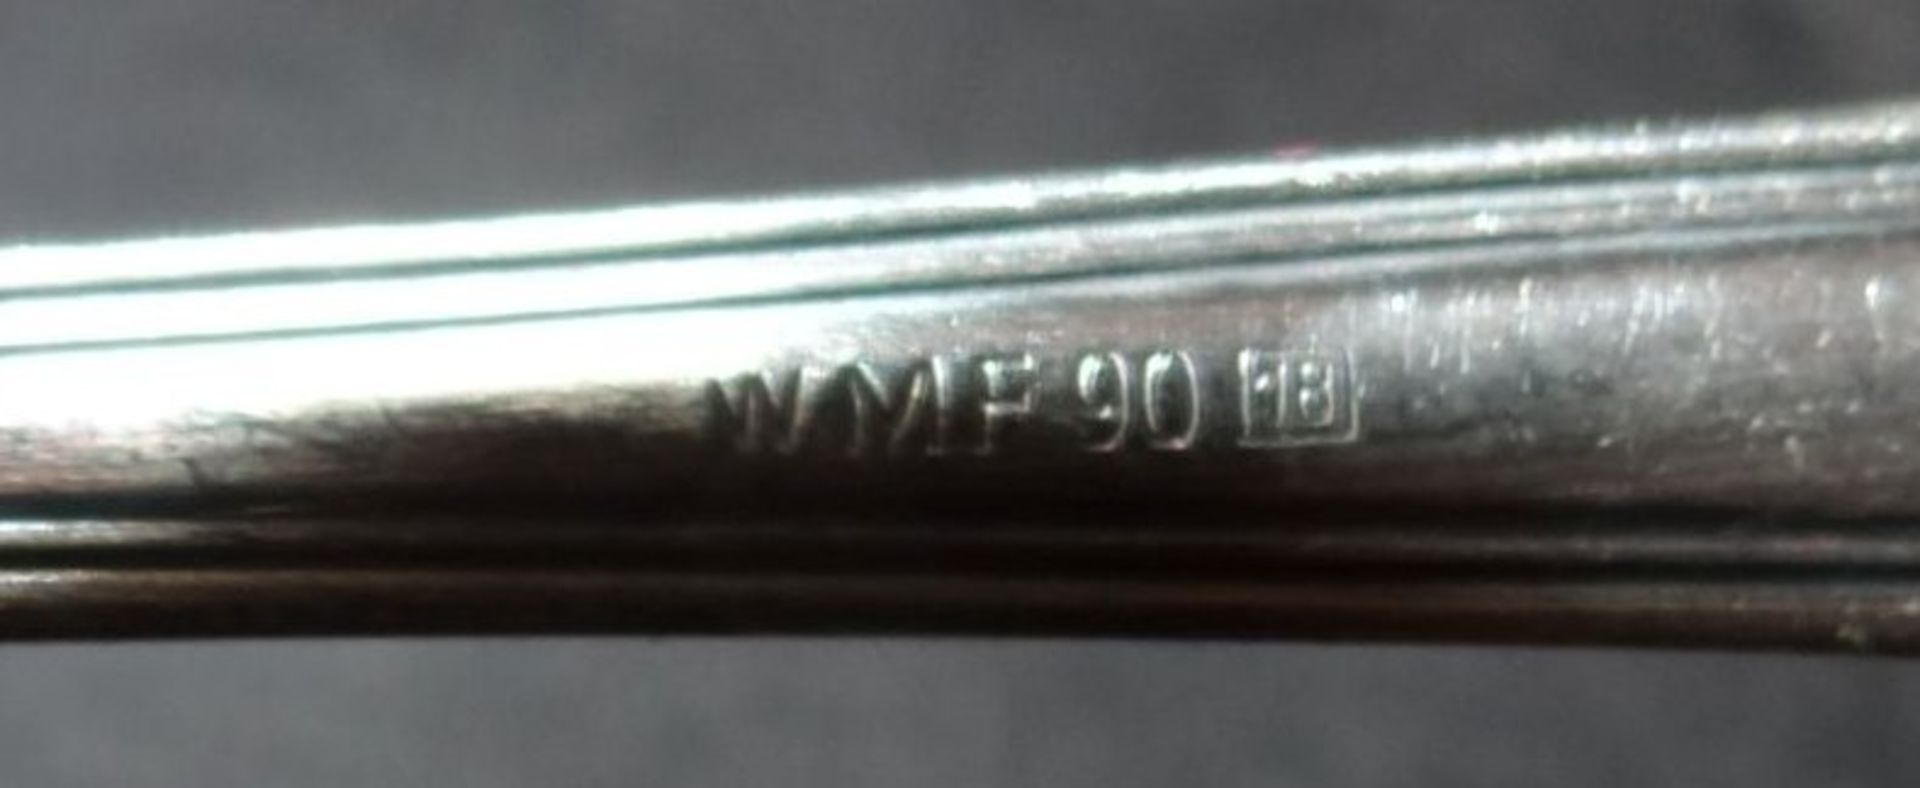 6x Kuchengabeln "WMF" versilbert, in Kasten, L-15,5 cm - Bild 4 aus 4